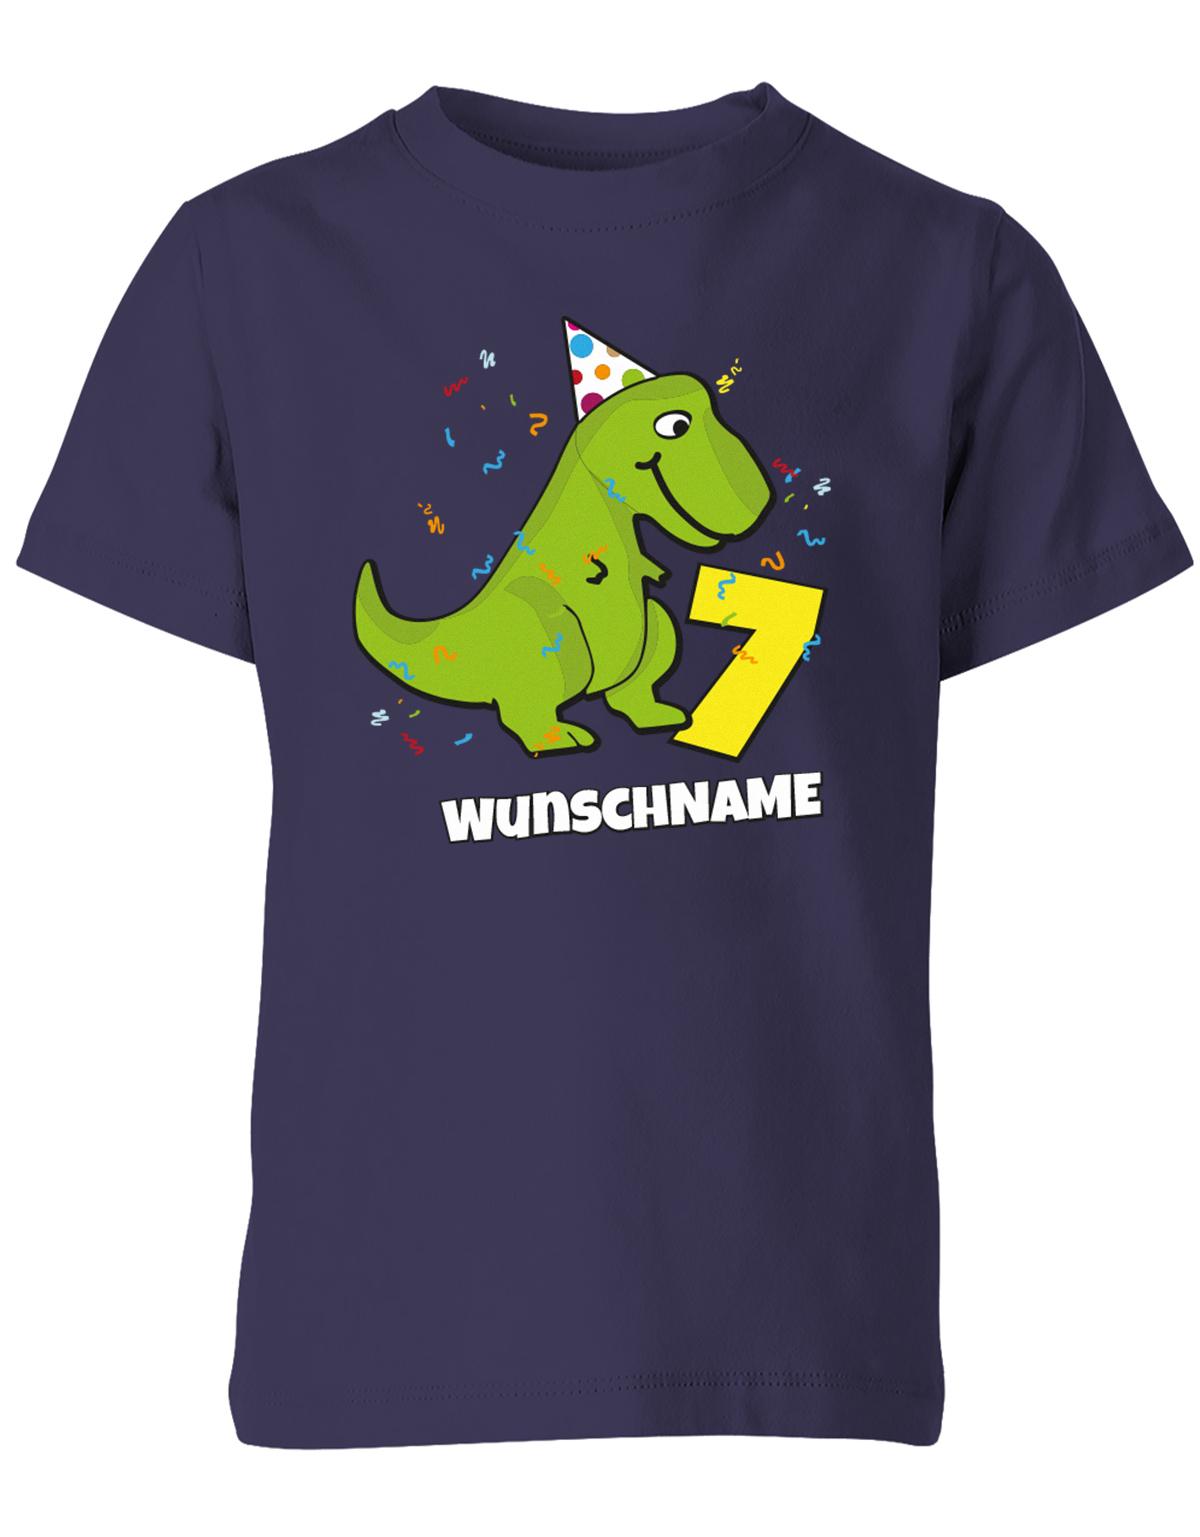 ich-bin-7-Dinosaurier-t-rex-wunschname-geburtstag-kinder-shirt-navy